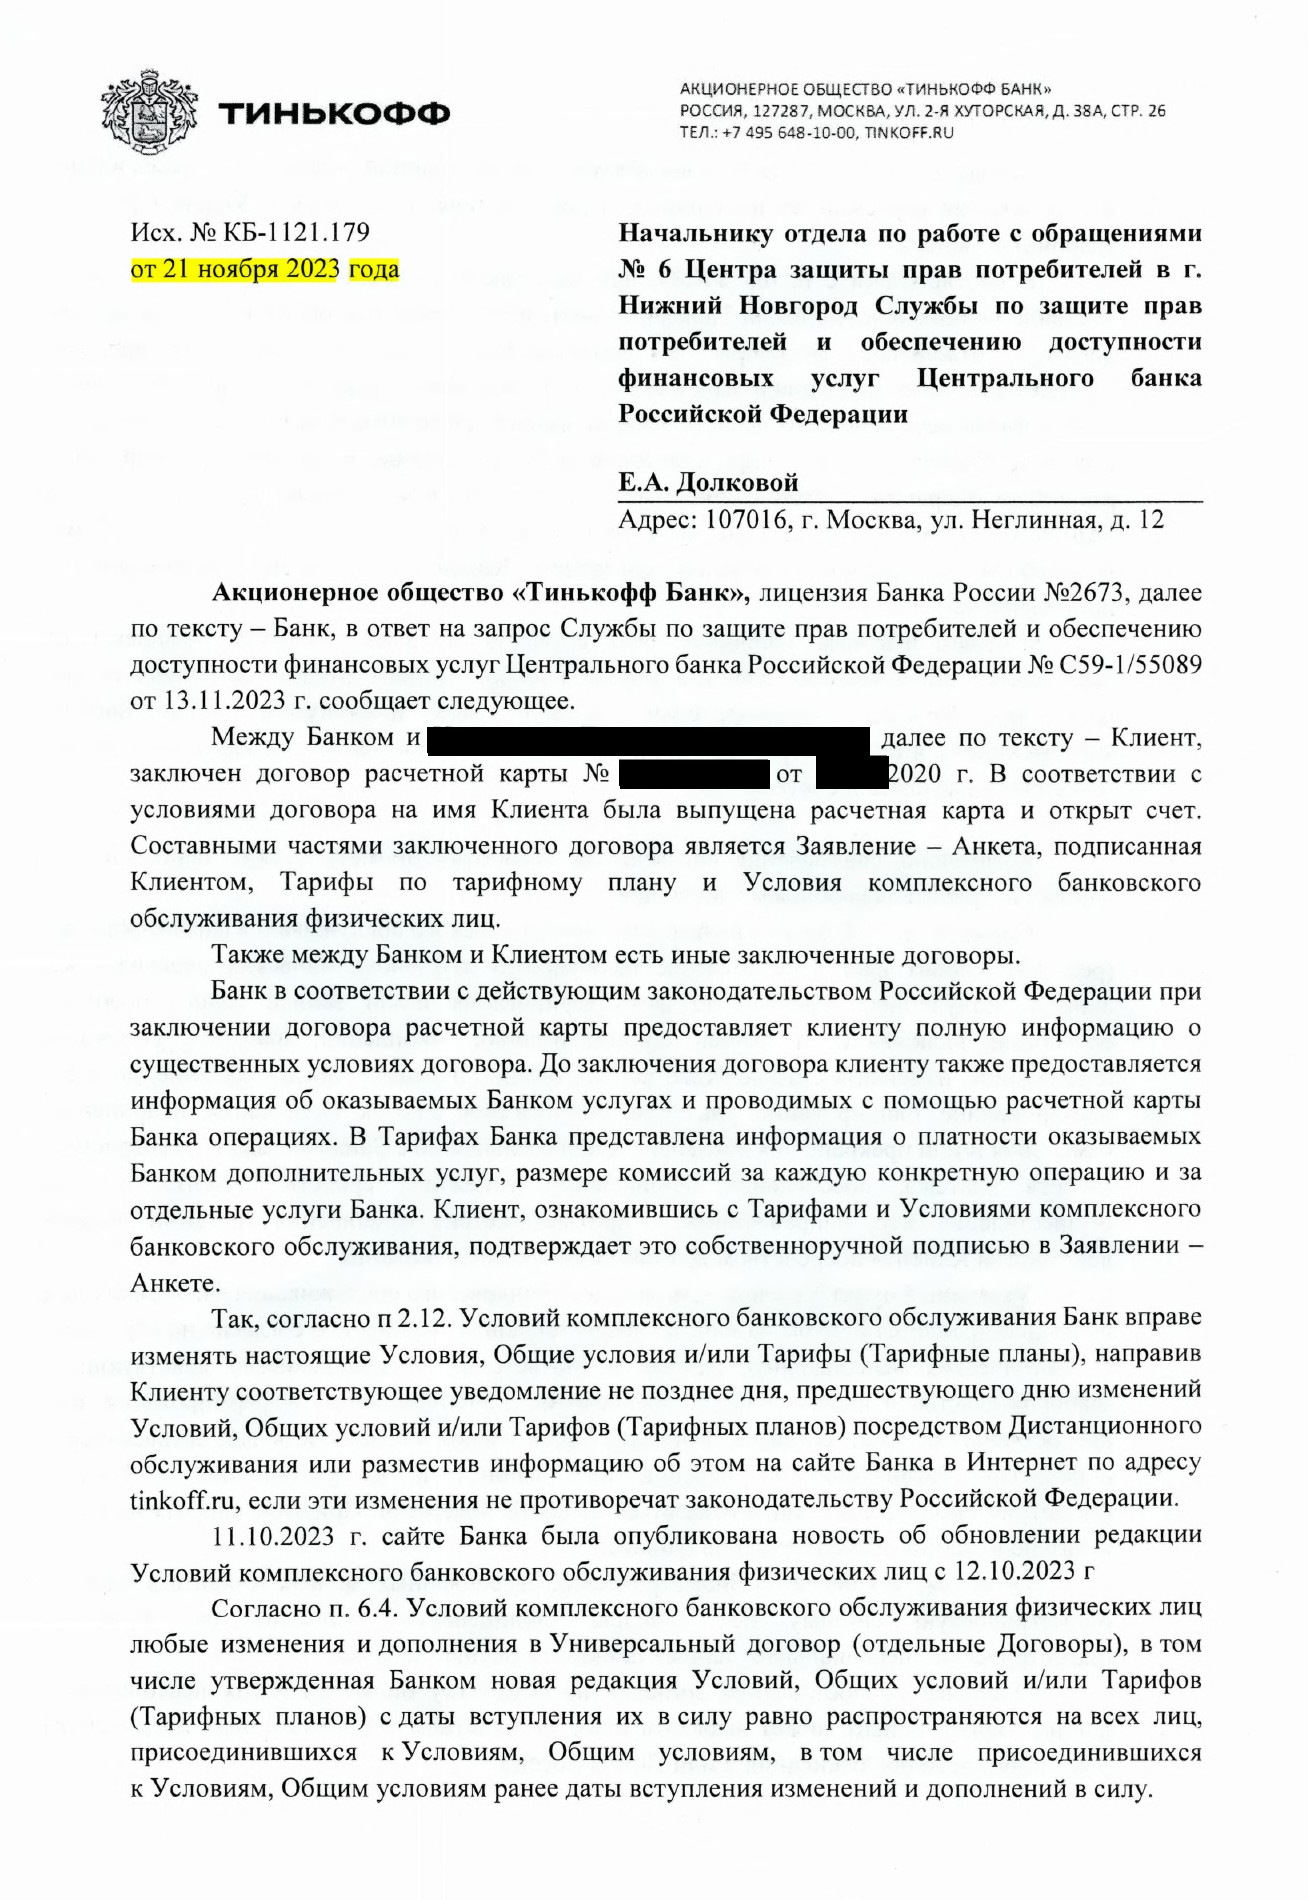 Тинькофф дает противоречащие ответы Роскомнадзору и ЦБ РФ в части дачи клиентом согласия на обработку его биометрии - 10